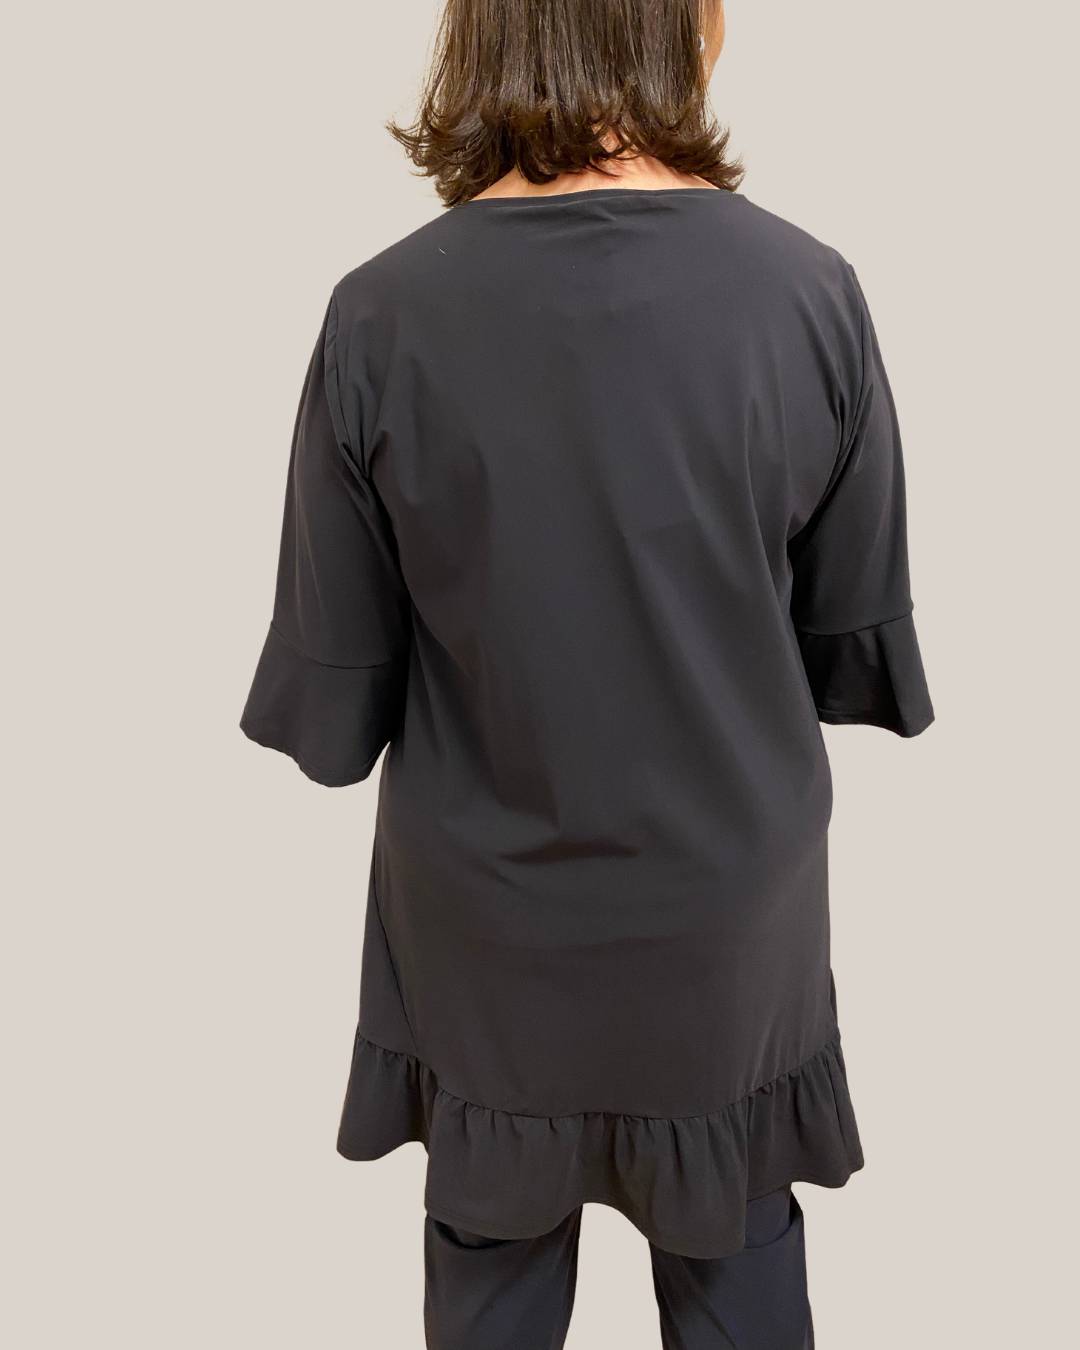 Dunkelblaues Tunika-Shirt mit Rüschen